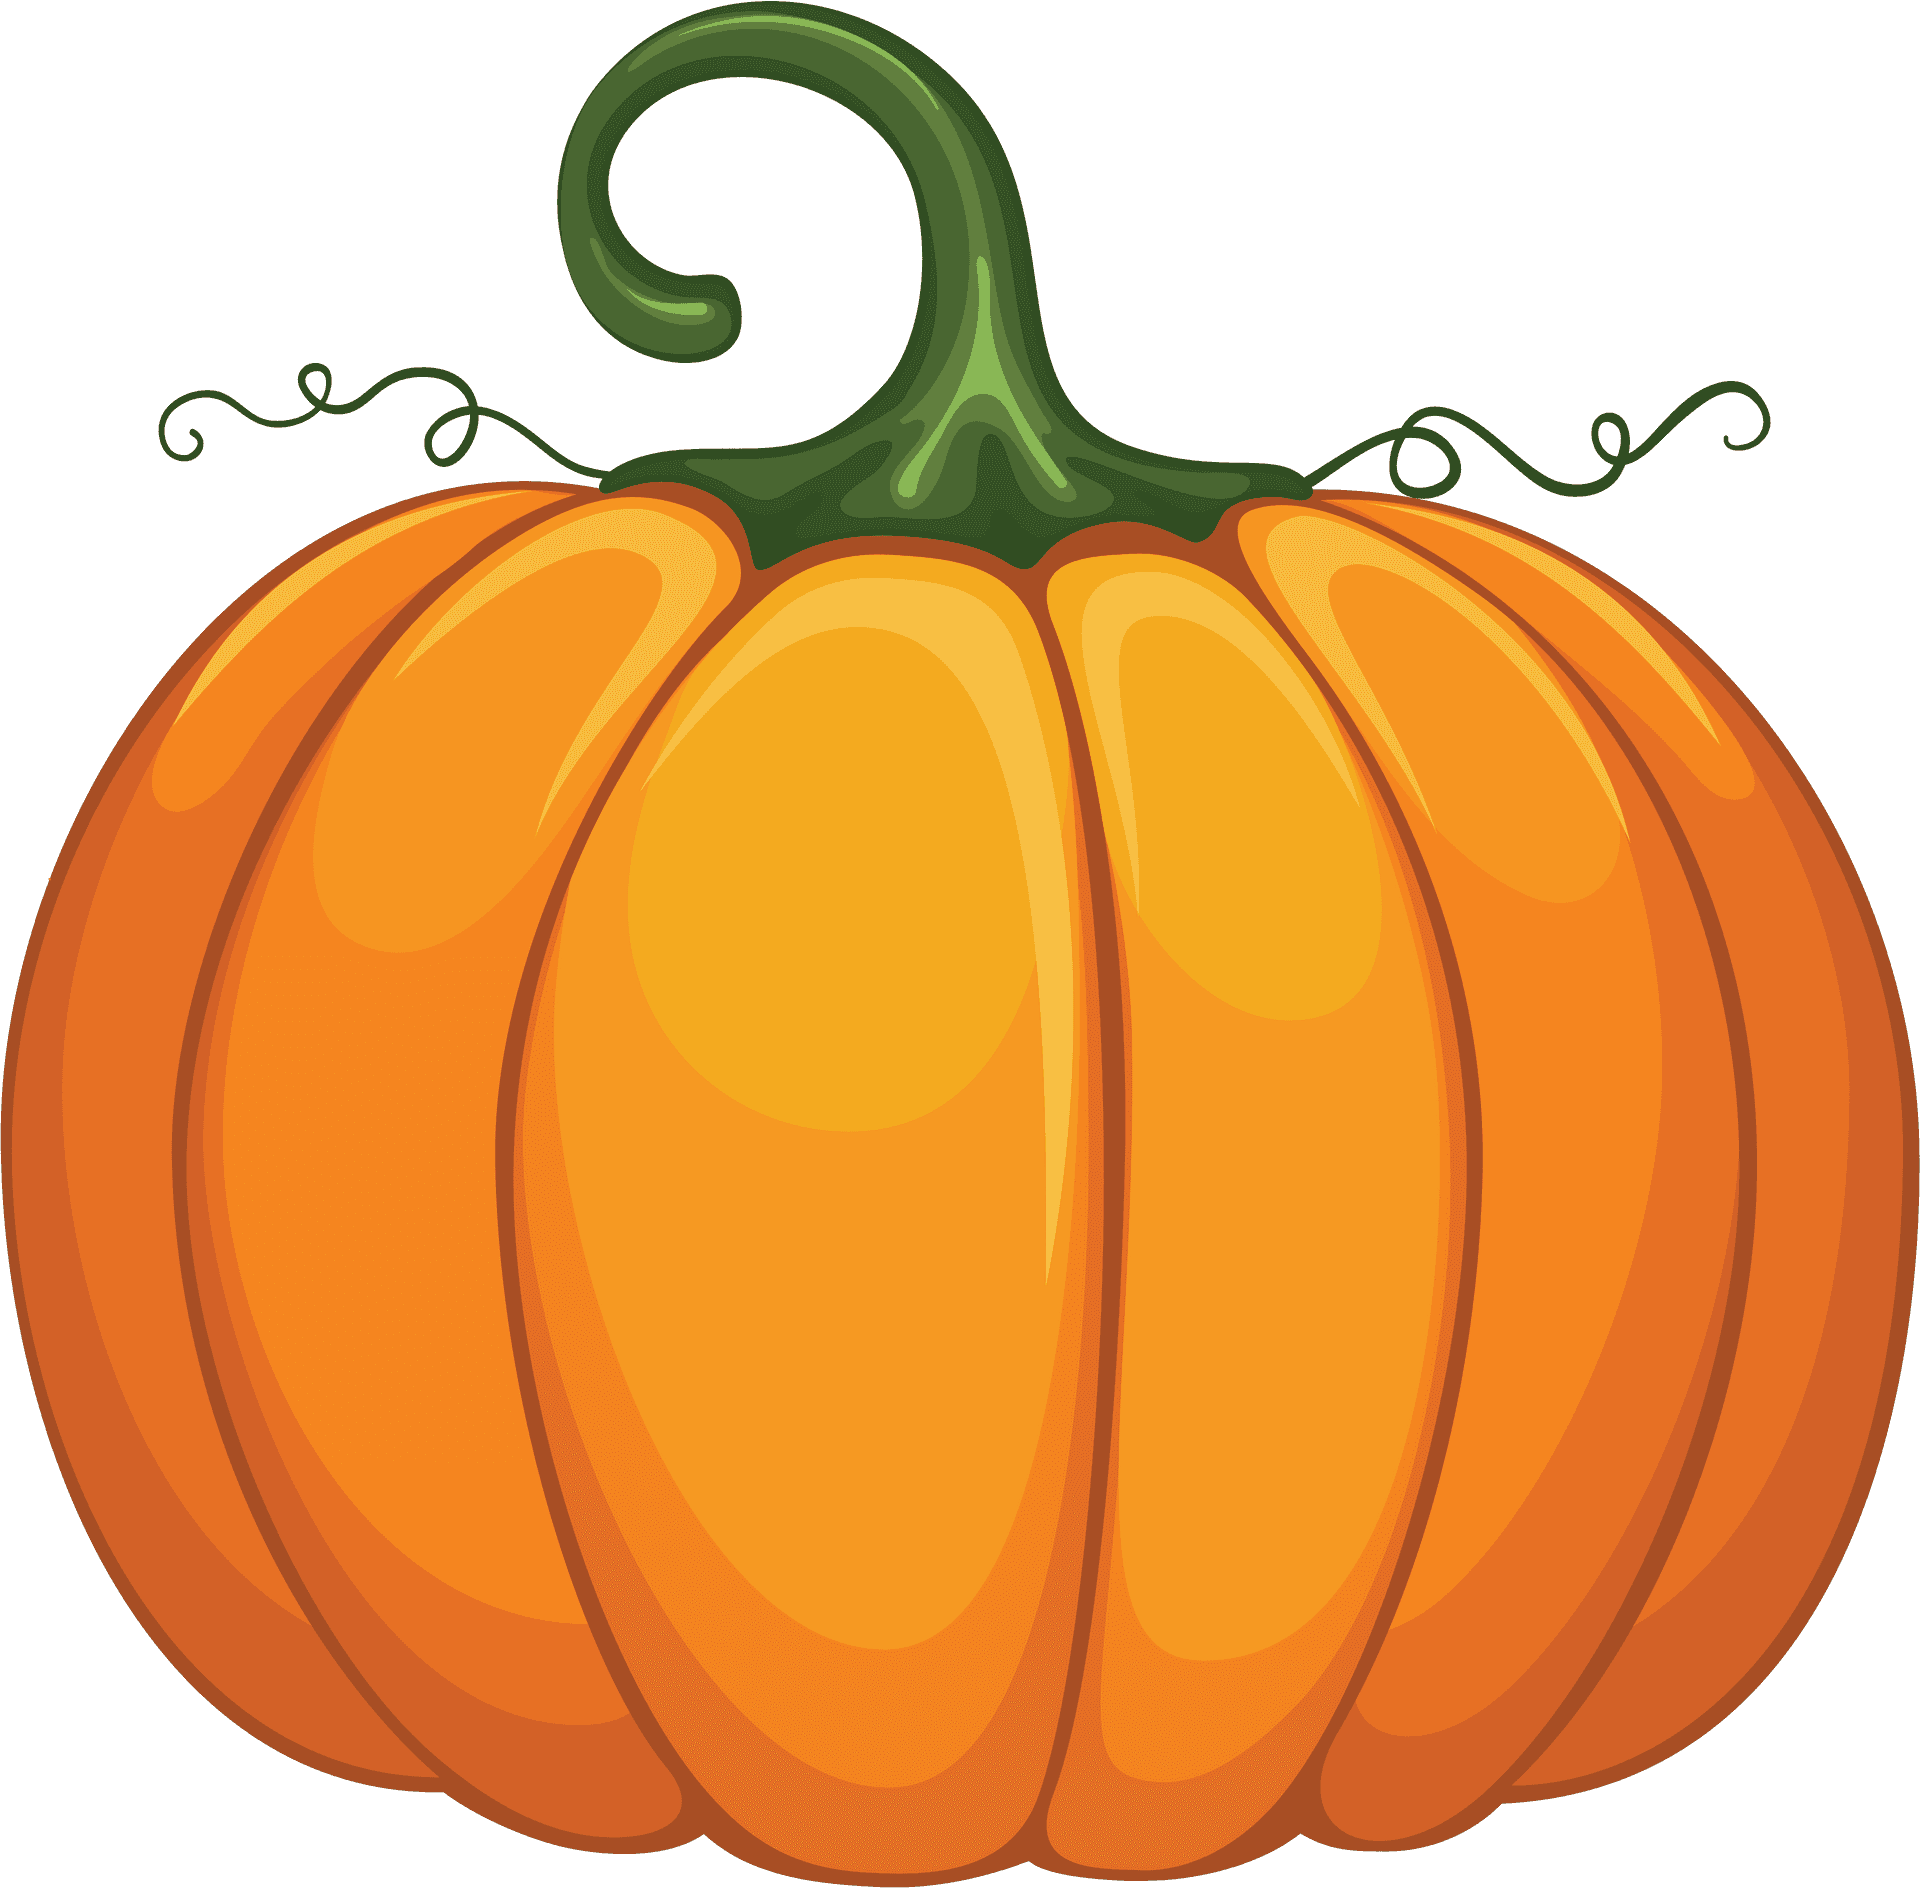 Vibrant Orange Pumpkin Illustration PNG image